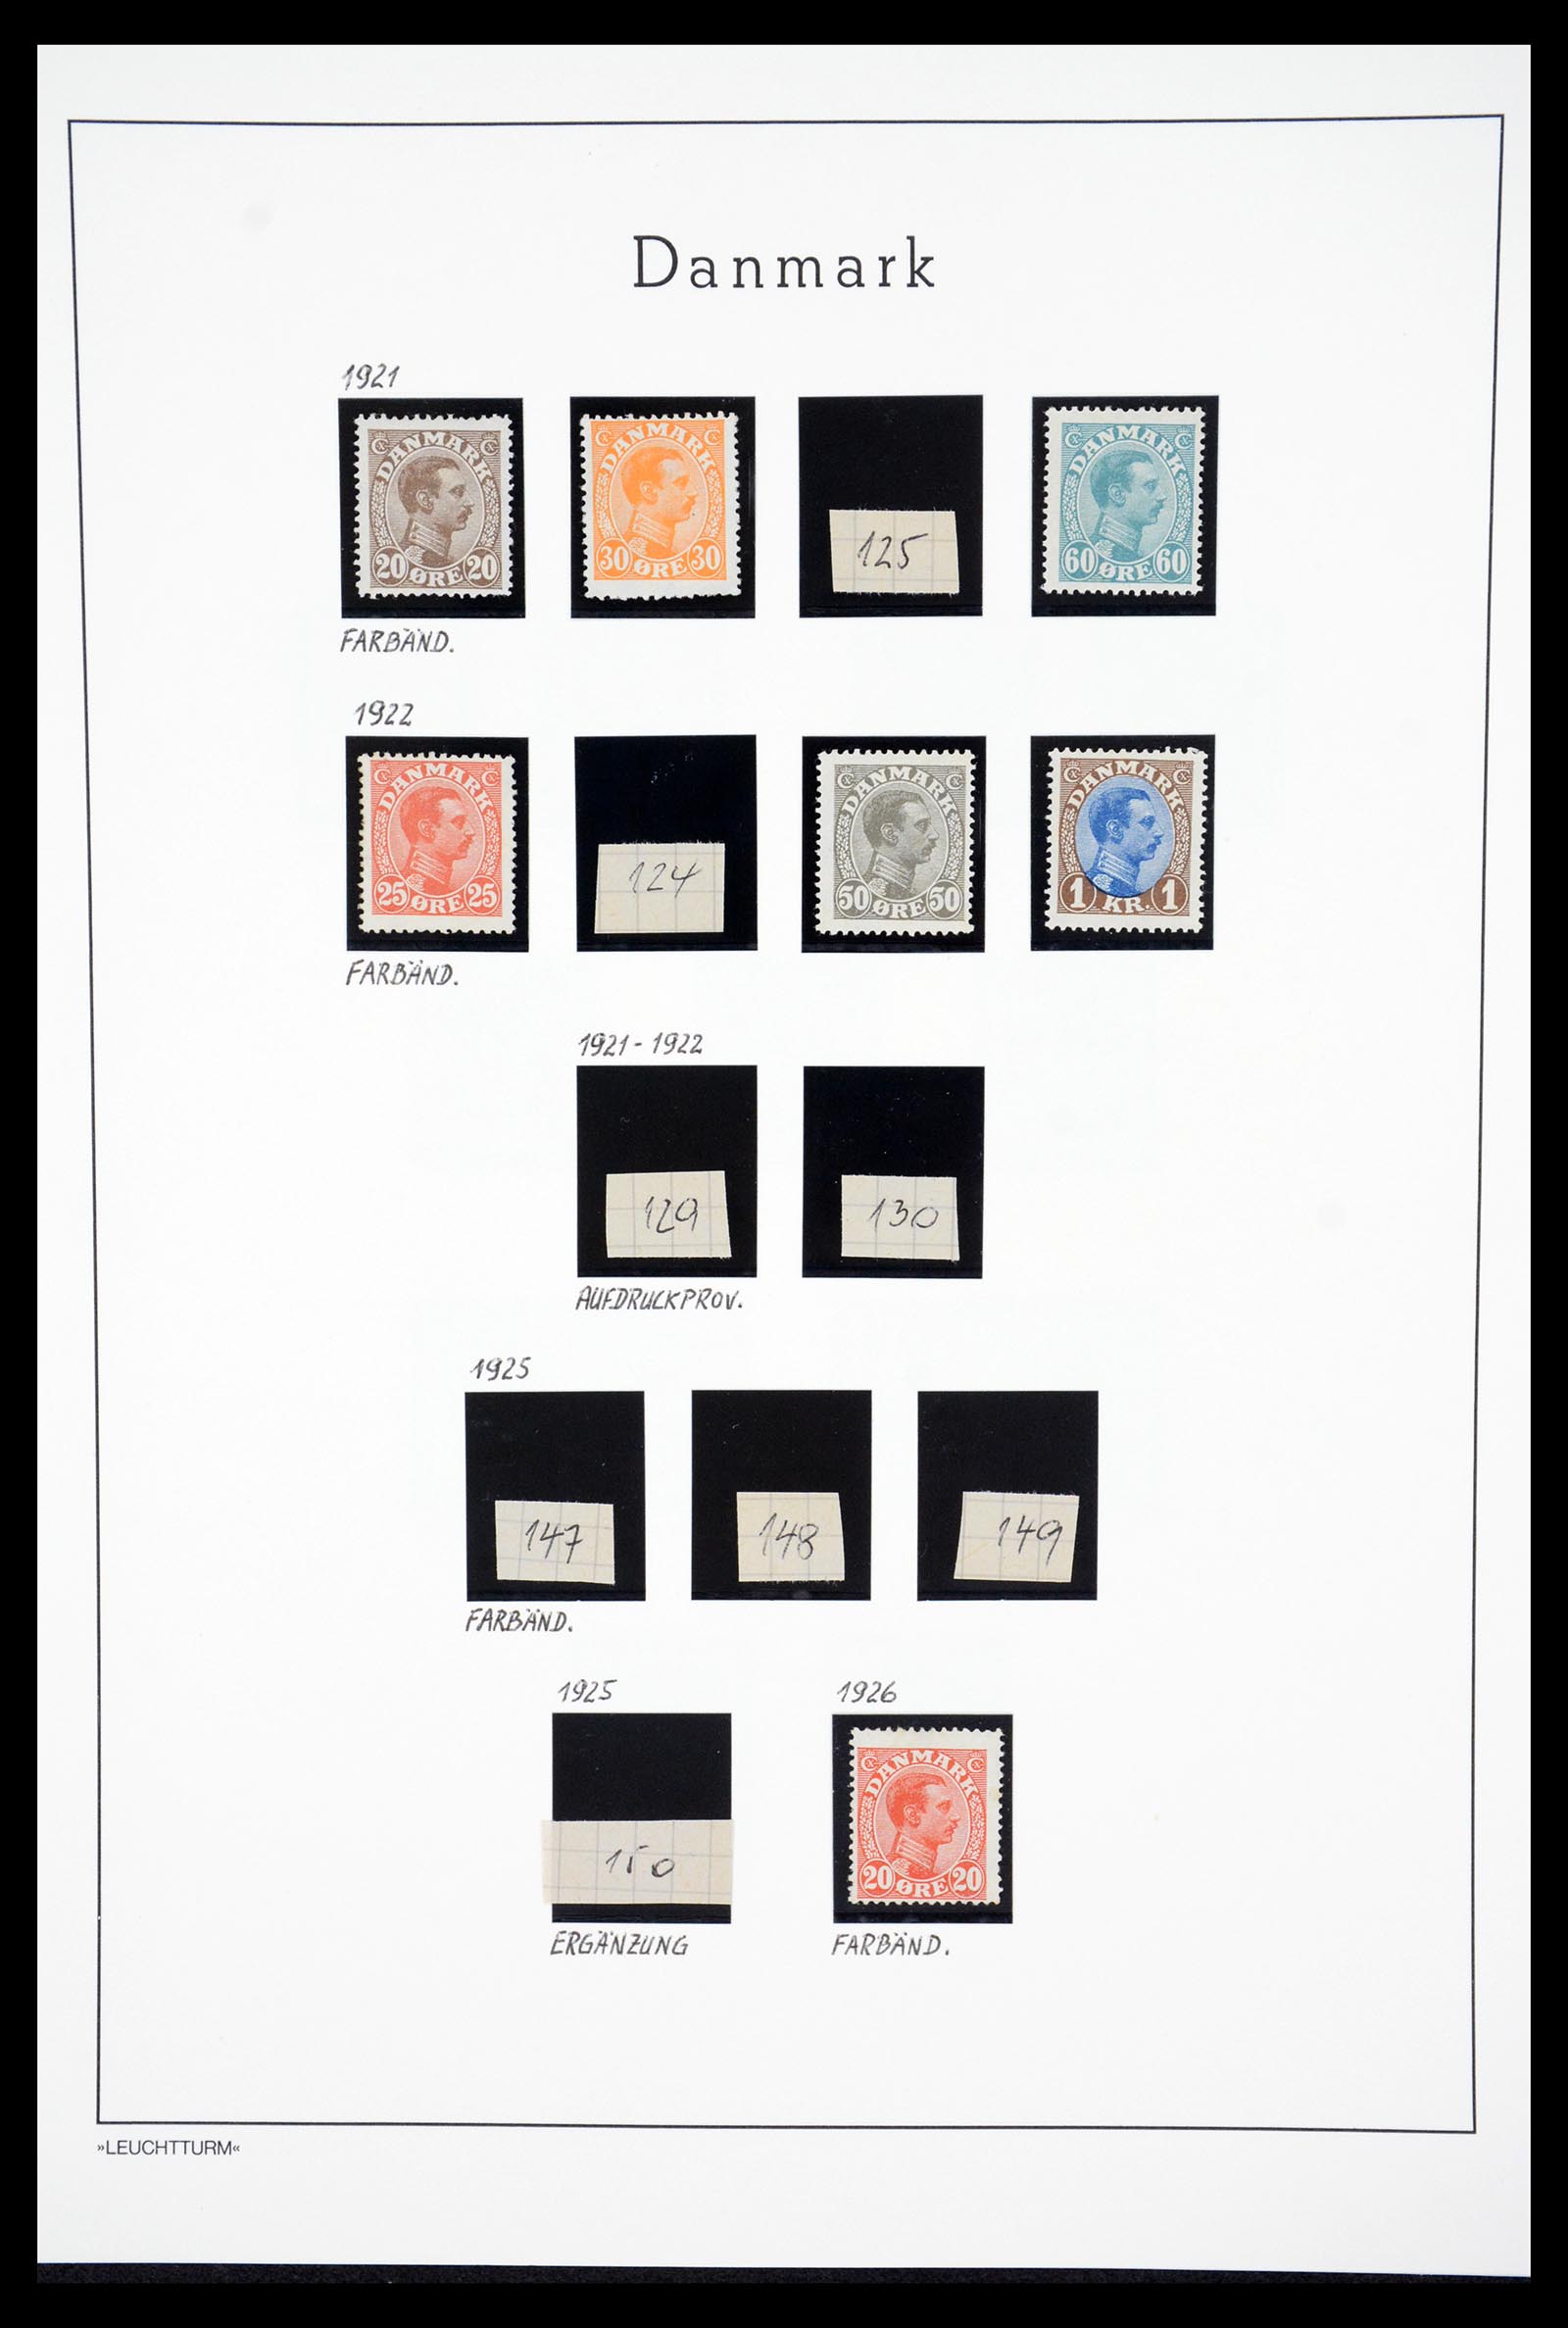 36612 038 - Stamp collection 36612 Denemarken 1851-1990.